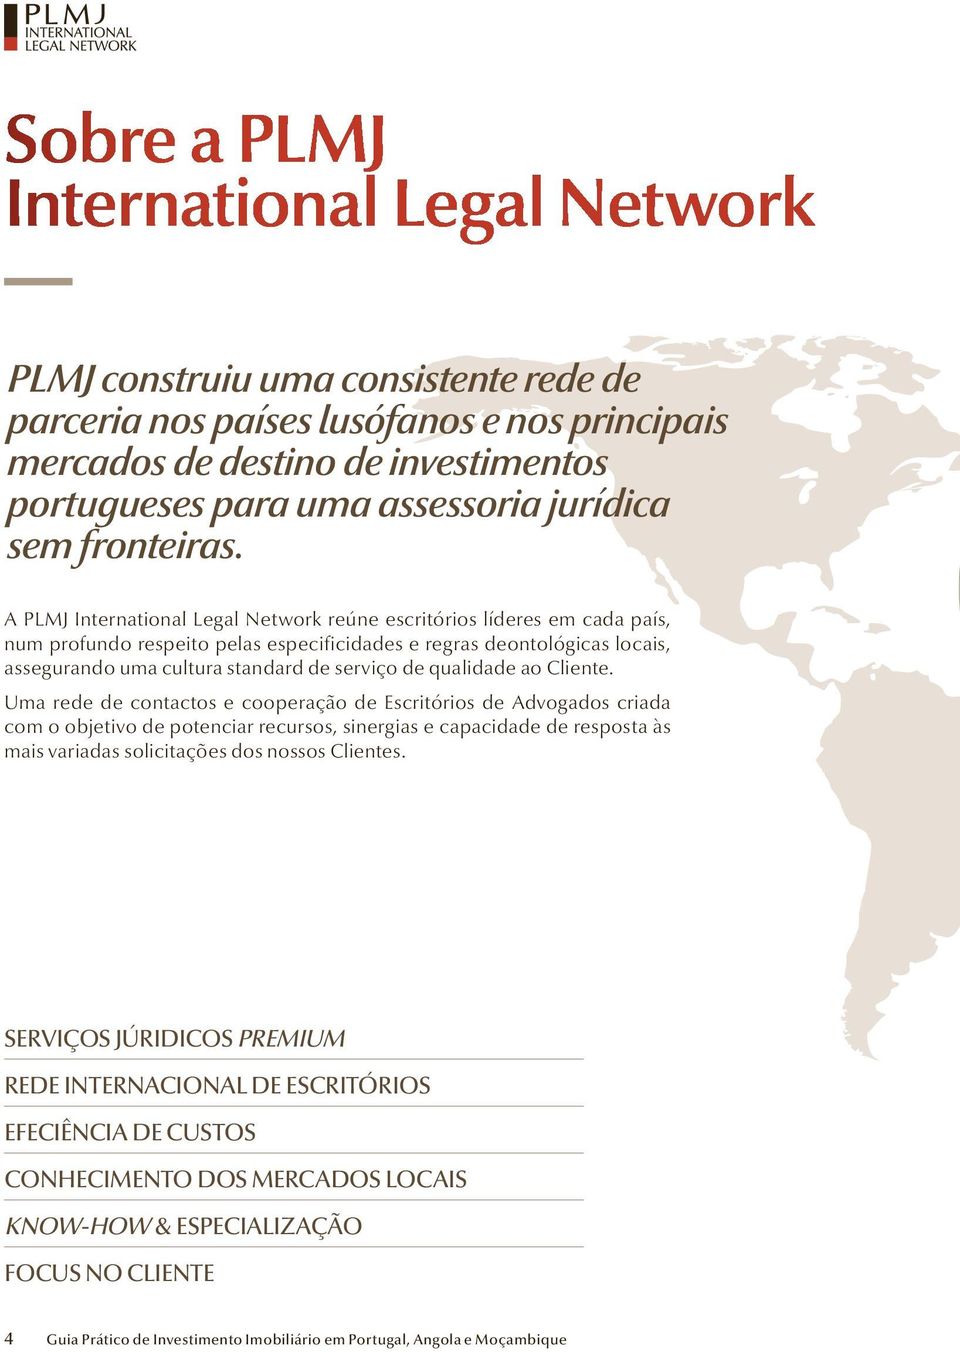 A PLMJ International Legal Network reúne escritórios líderes em cada país, num profundo respeito pelas especificidades e regras deontológicas locais, assegurando uma cultura standard de serviço de